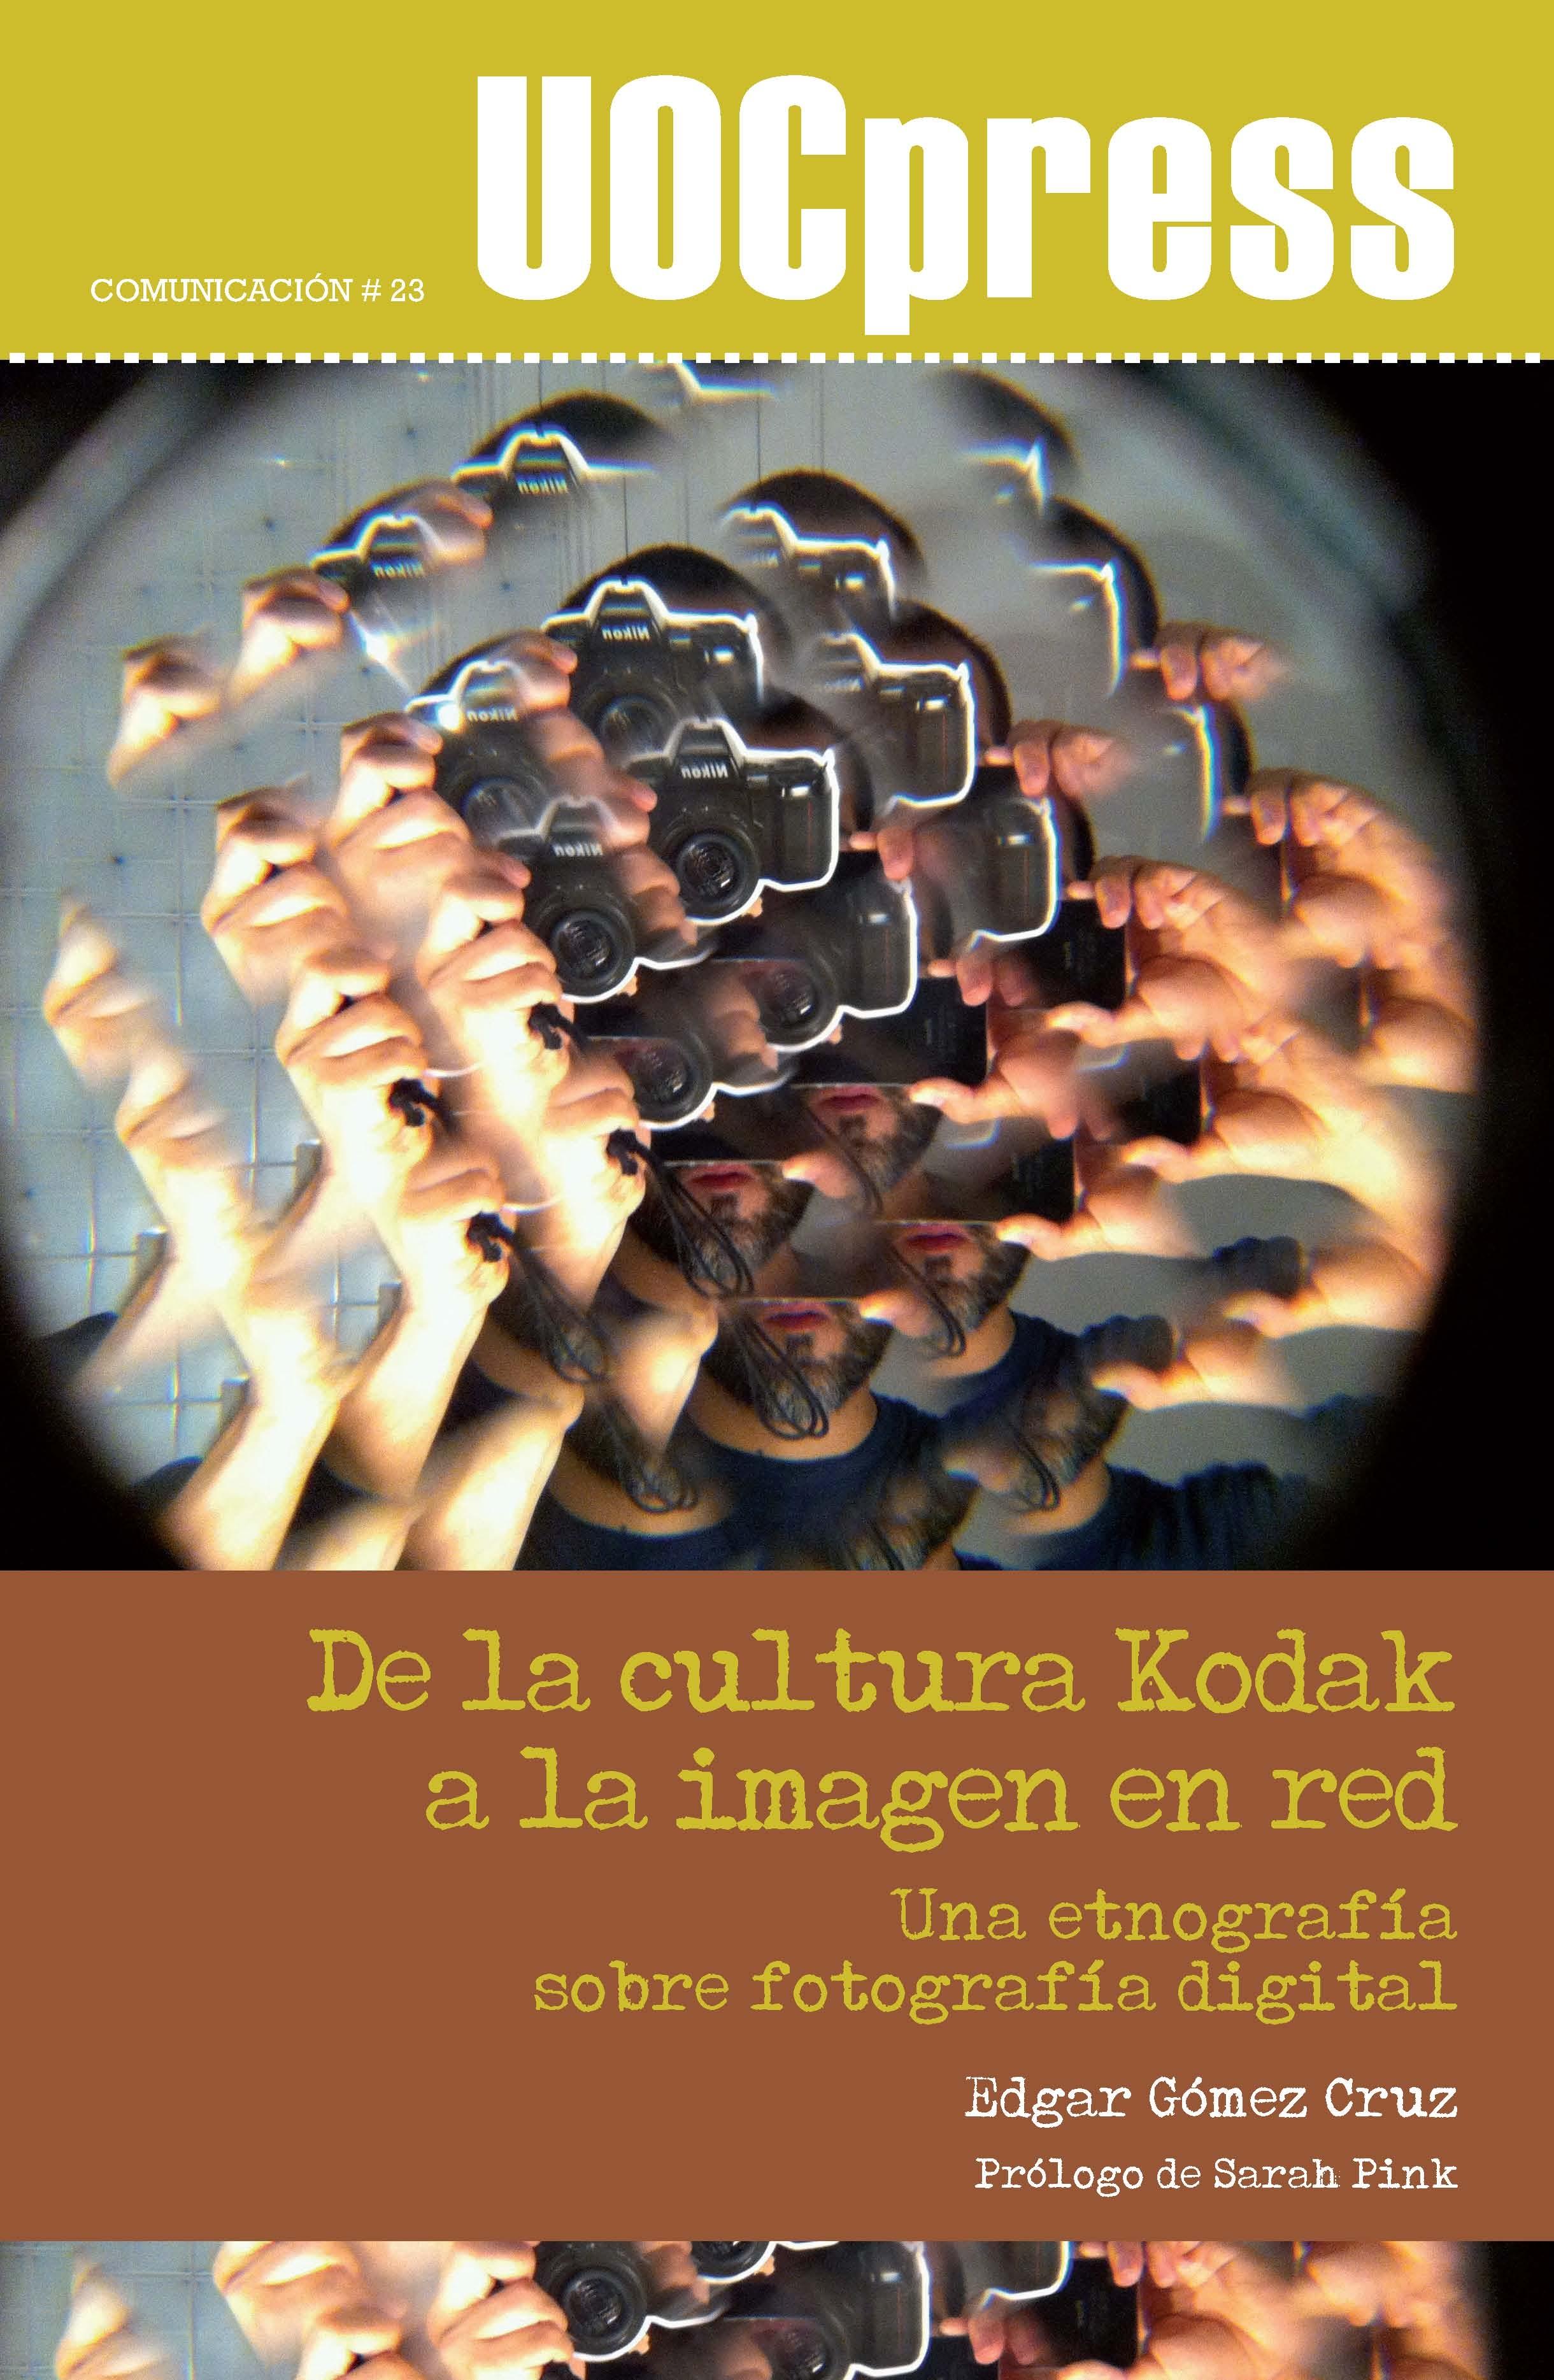 DE LA CULTURA KODAK A LA IMAGEN EN RED "Una etnografía sobre fotografía digital"